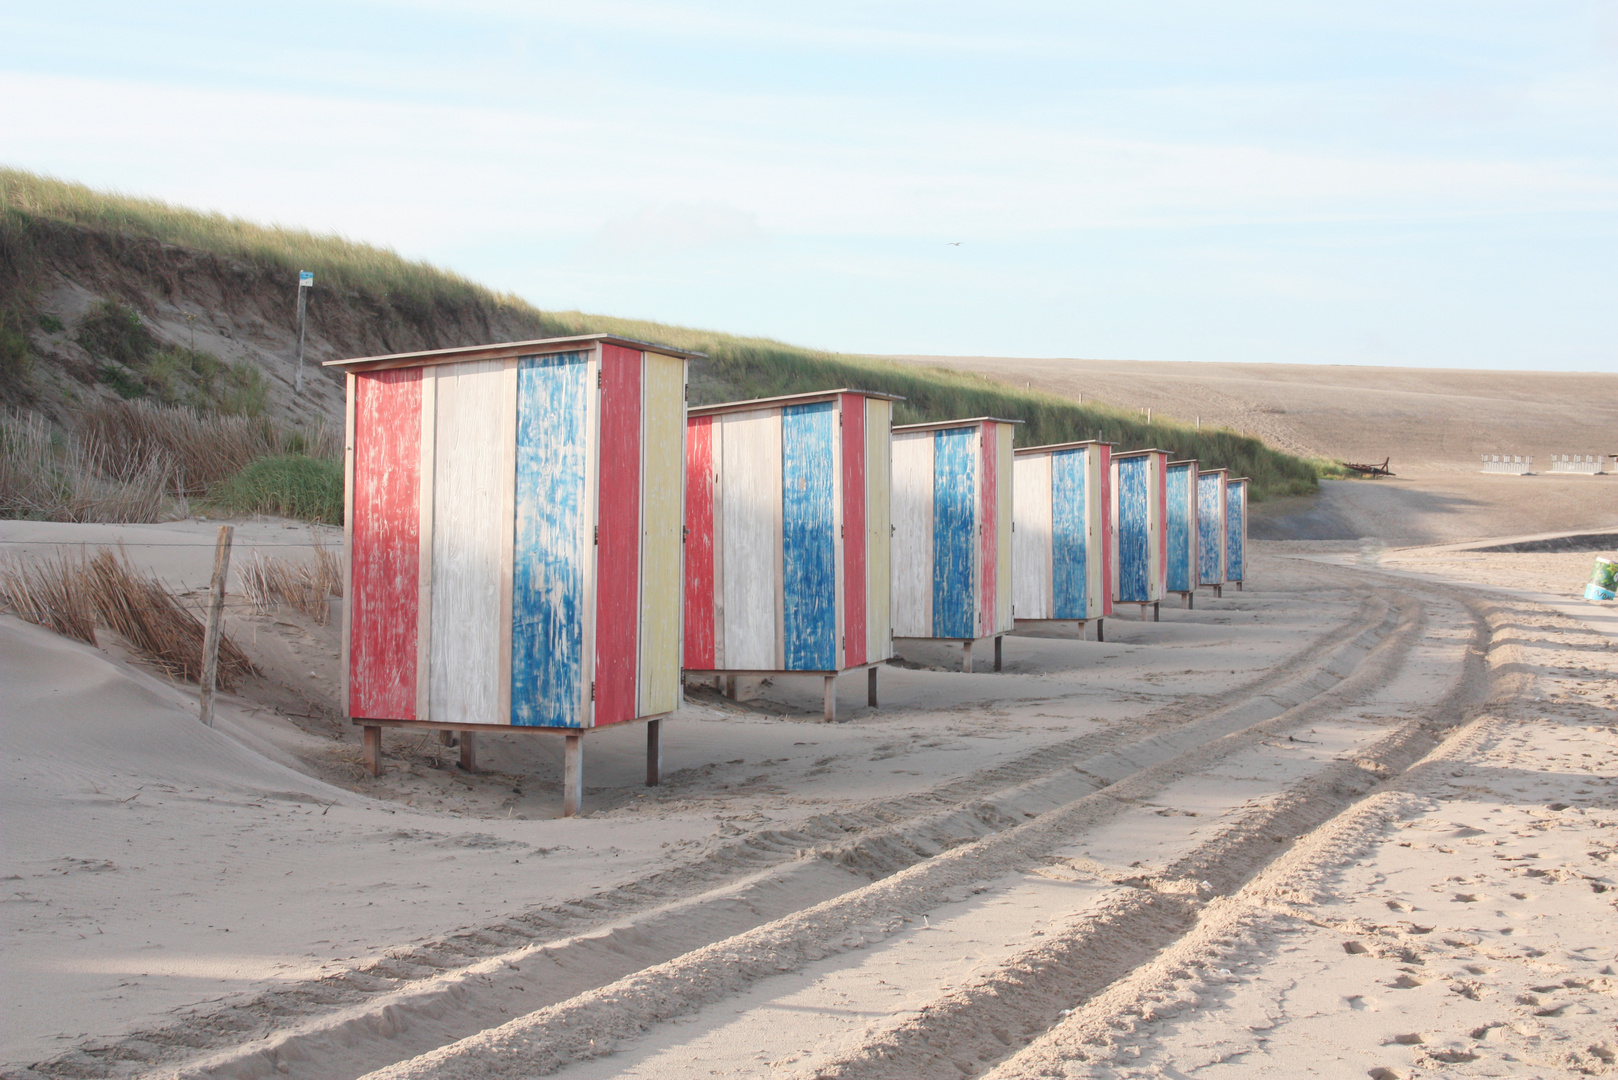 Strandhäuser in Holland warten auf den Tag und die Sonne